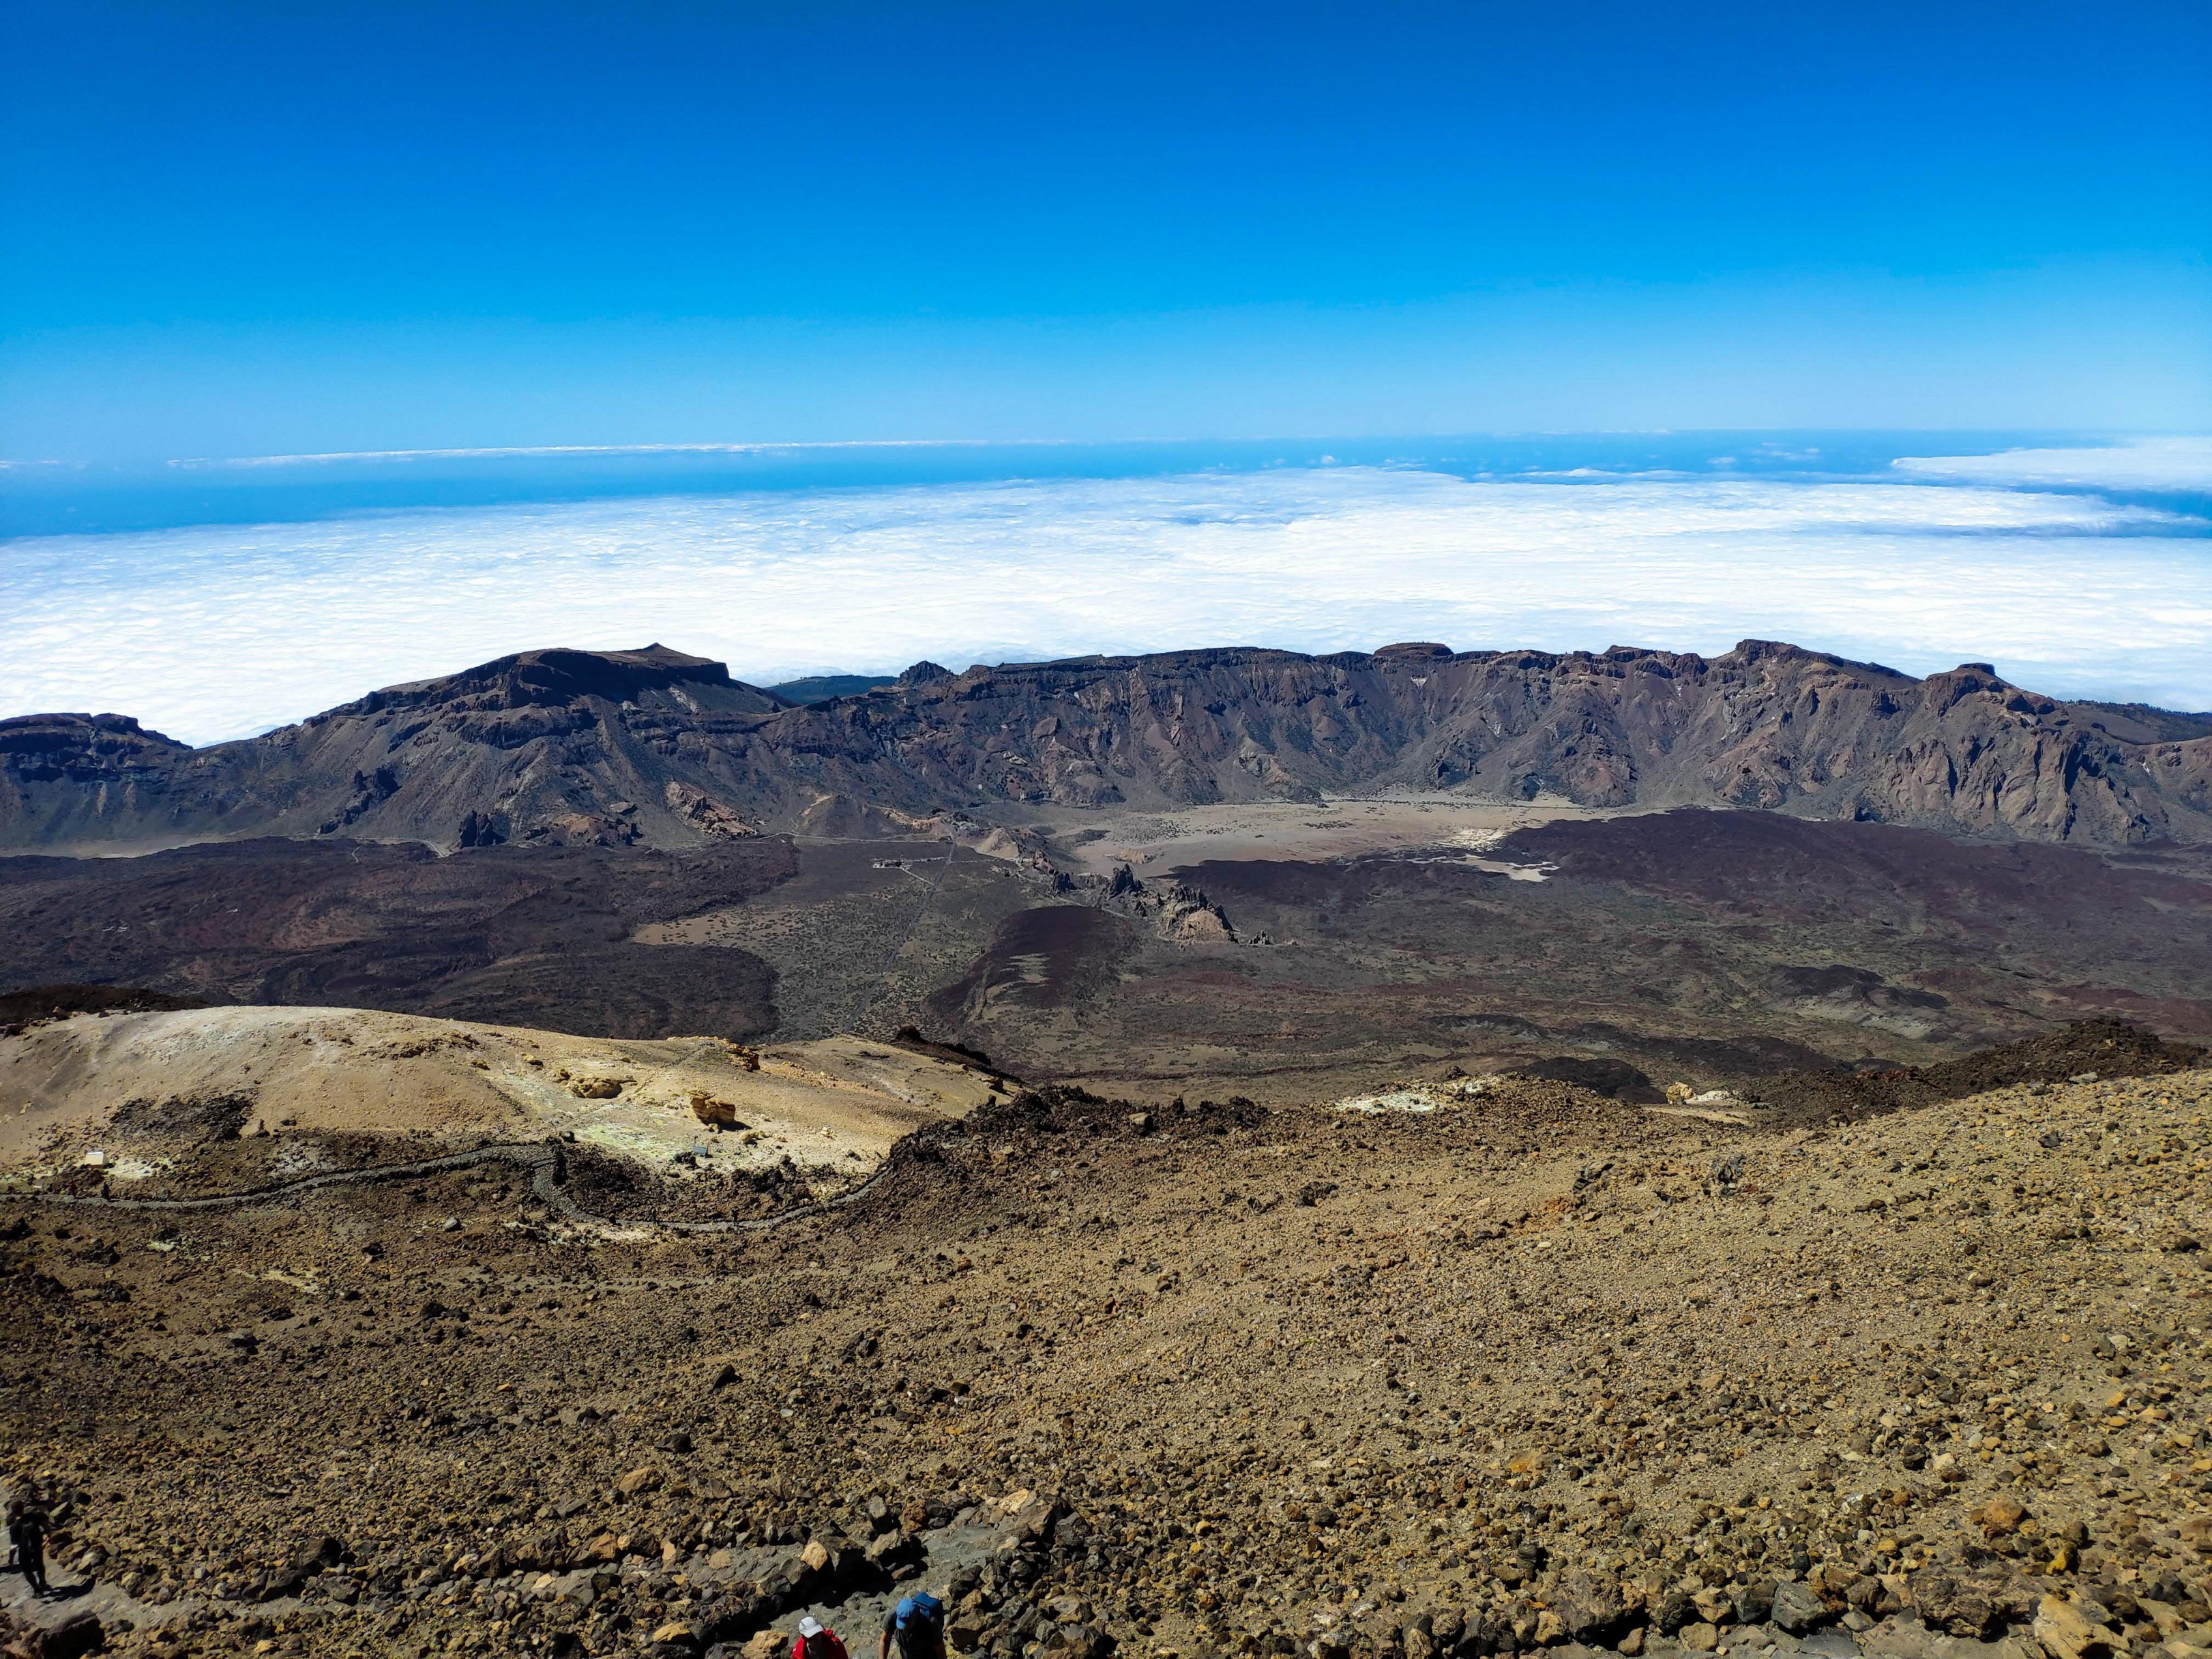 2.-La caldera del Teide